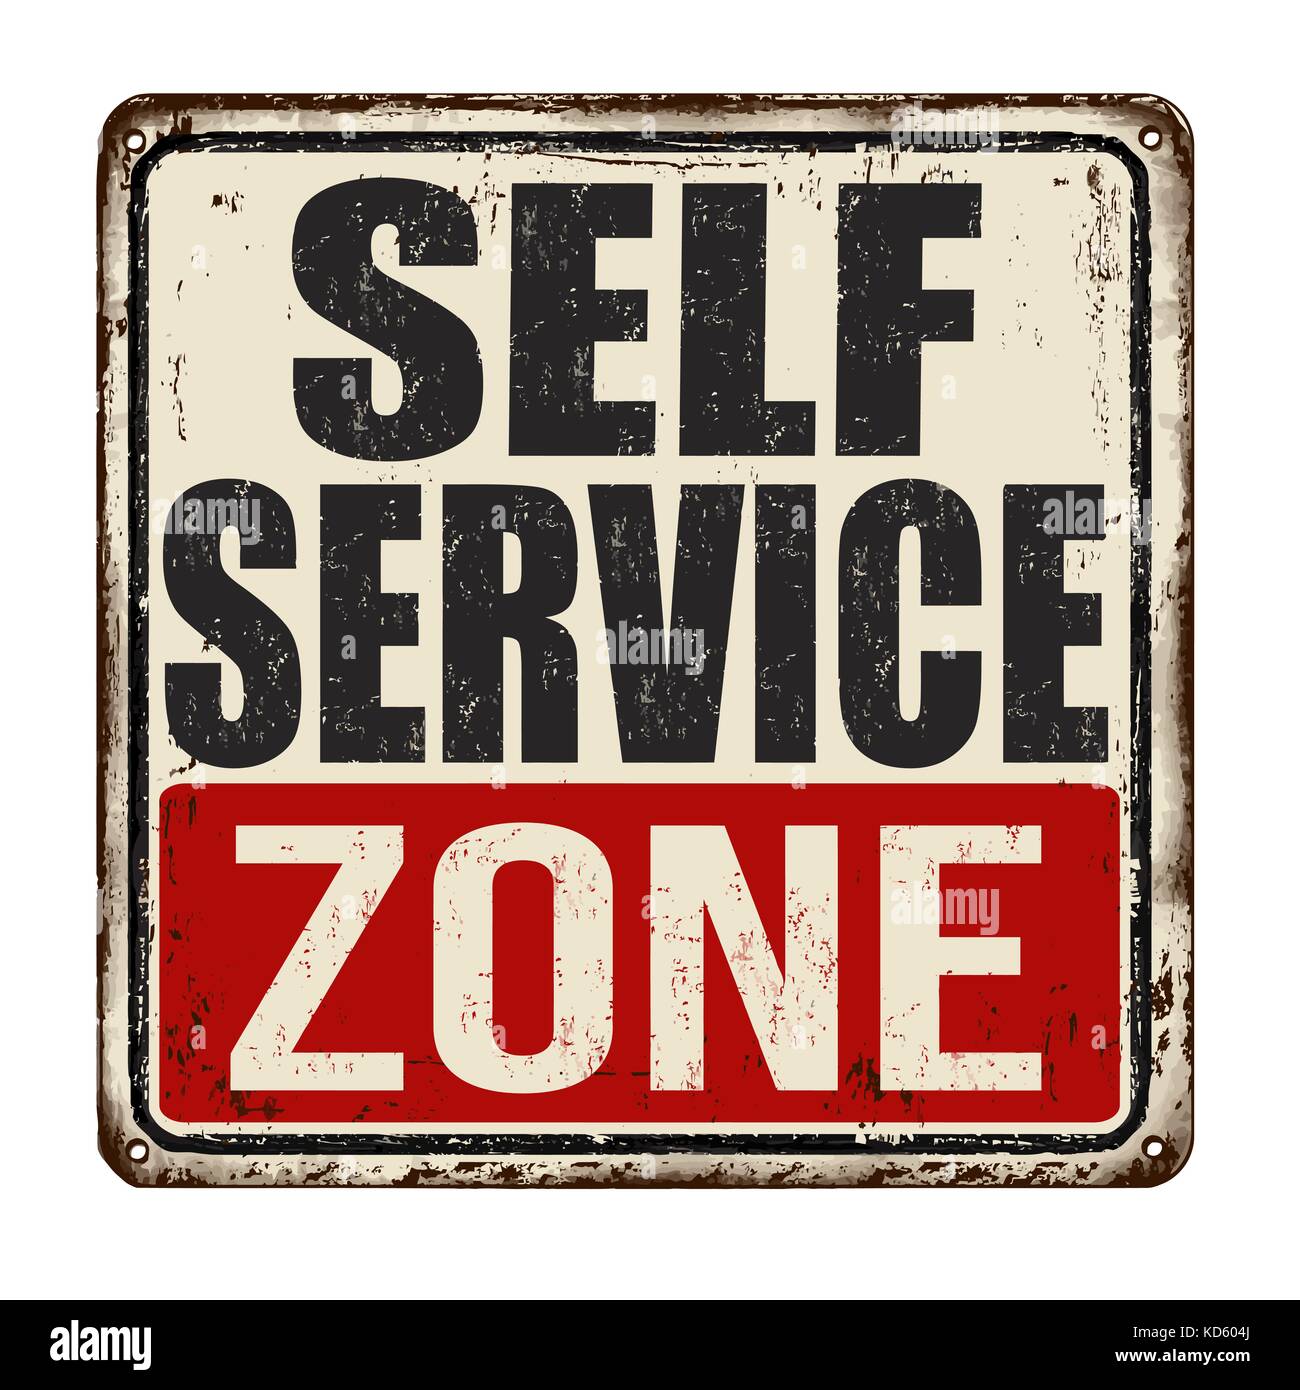 Self service zona vintage metallo arrugginito segno su uno sfondo bianco, illustrazione vettoriale Illustrazione Vettoriale